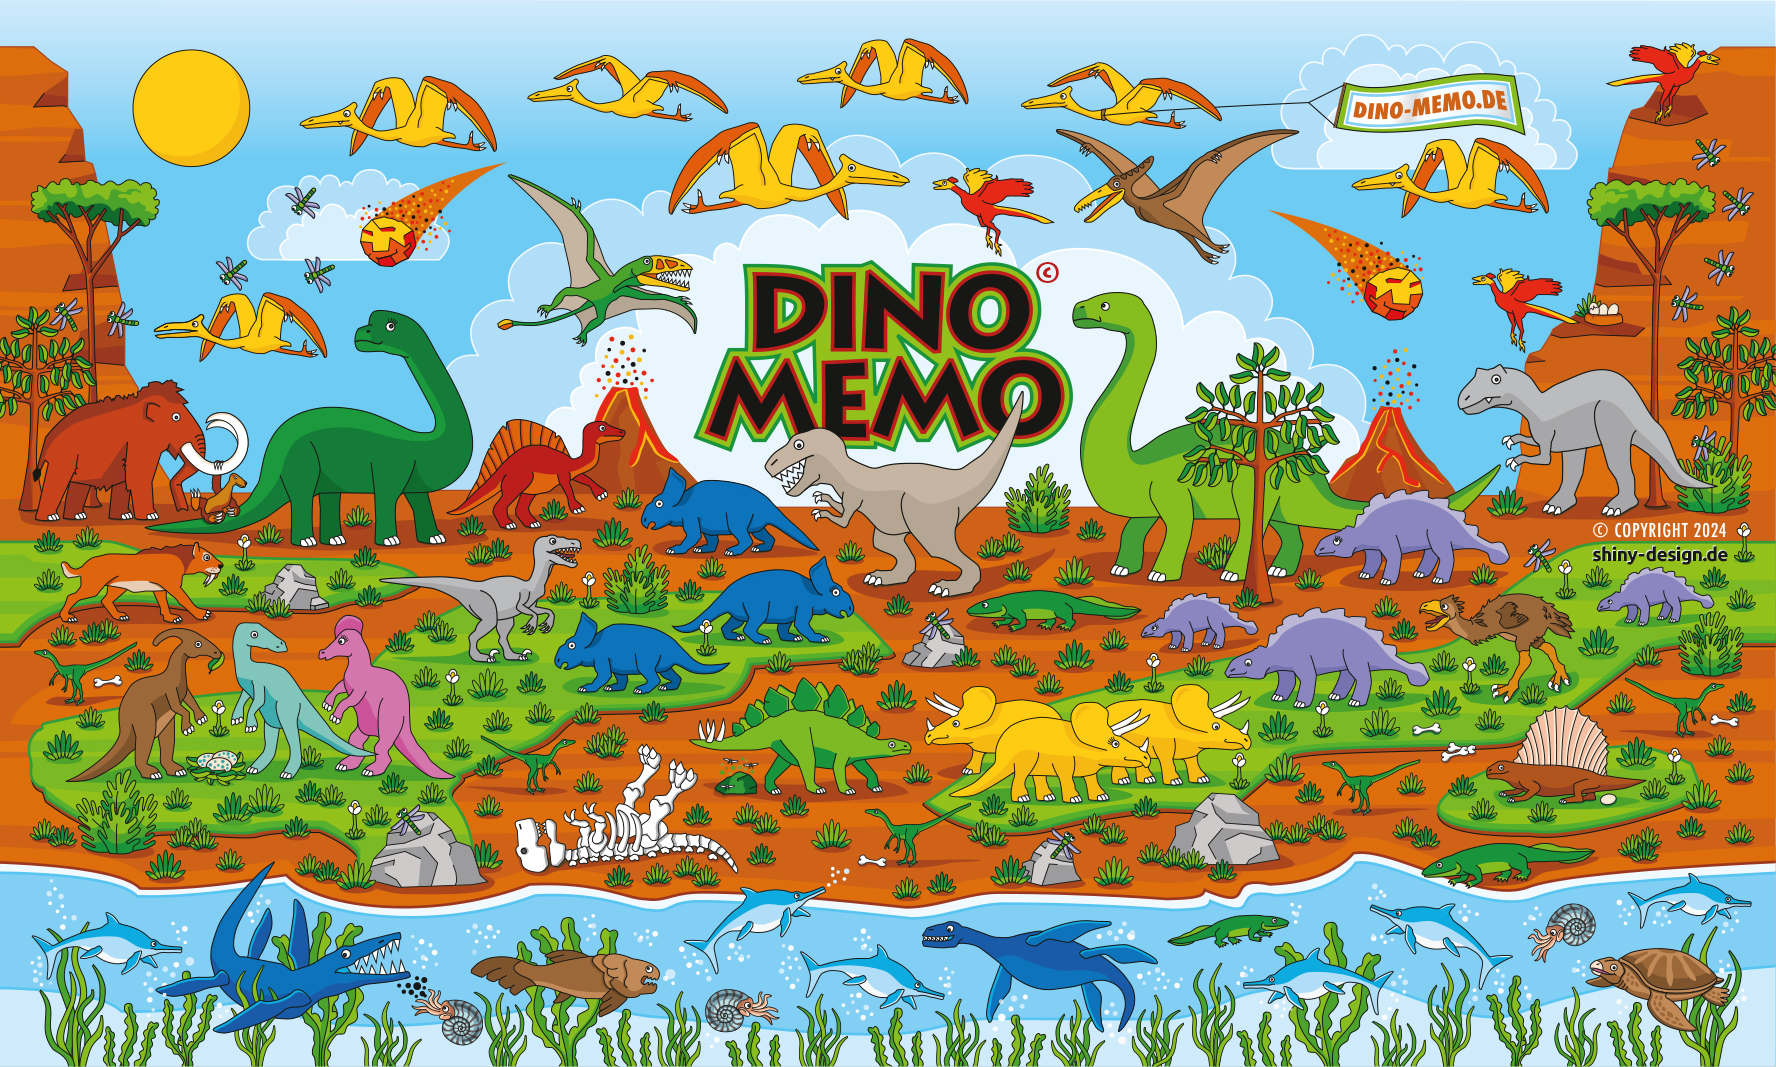 Dino Memory Landschaft mit allen Dinosauriern und Vulkanen und etwa Vegetation